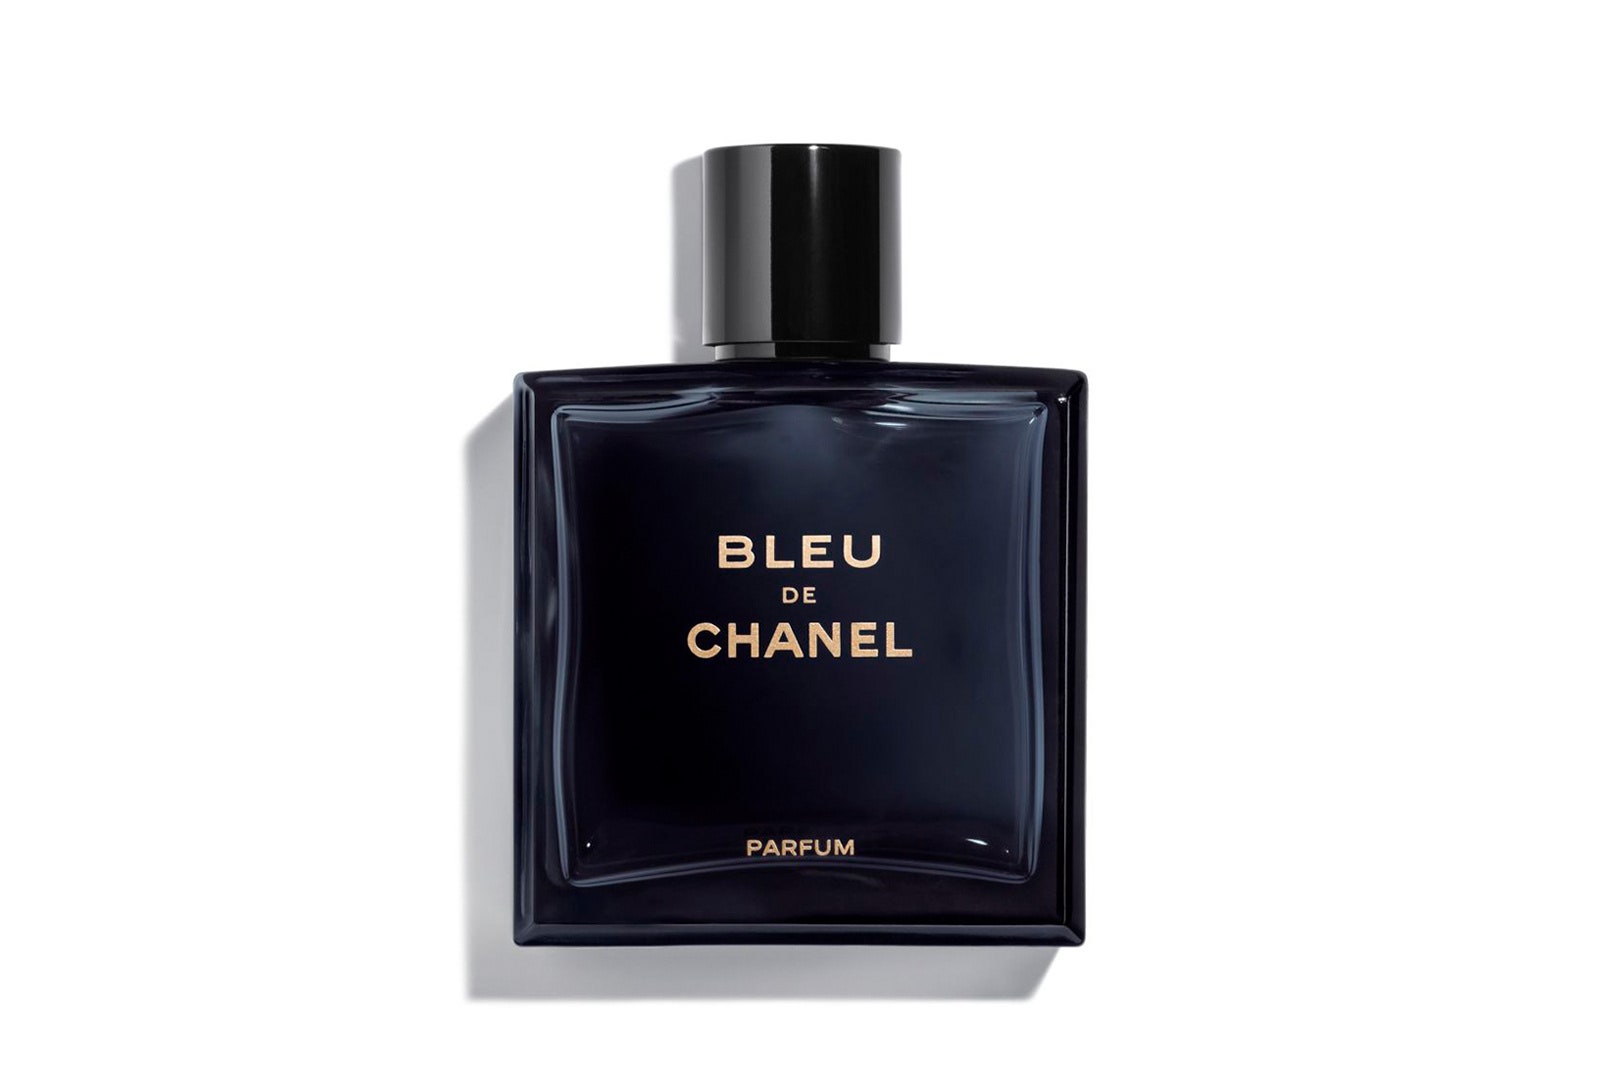 Какой парфюм редакторы Glamour подарят своим любимым мужчинам на 23 февраля